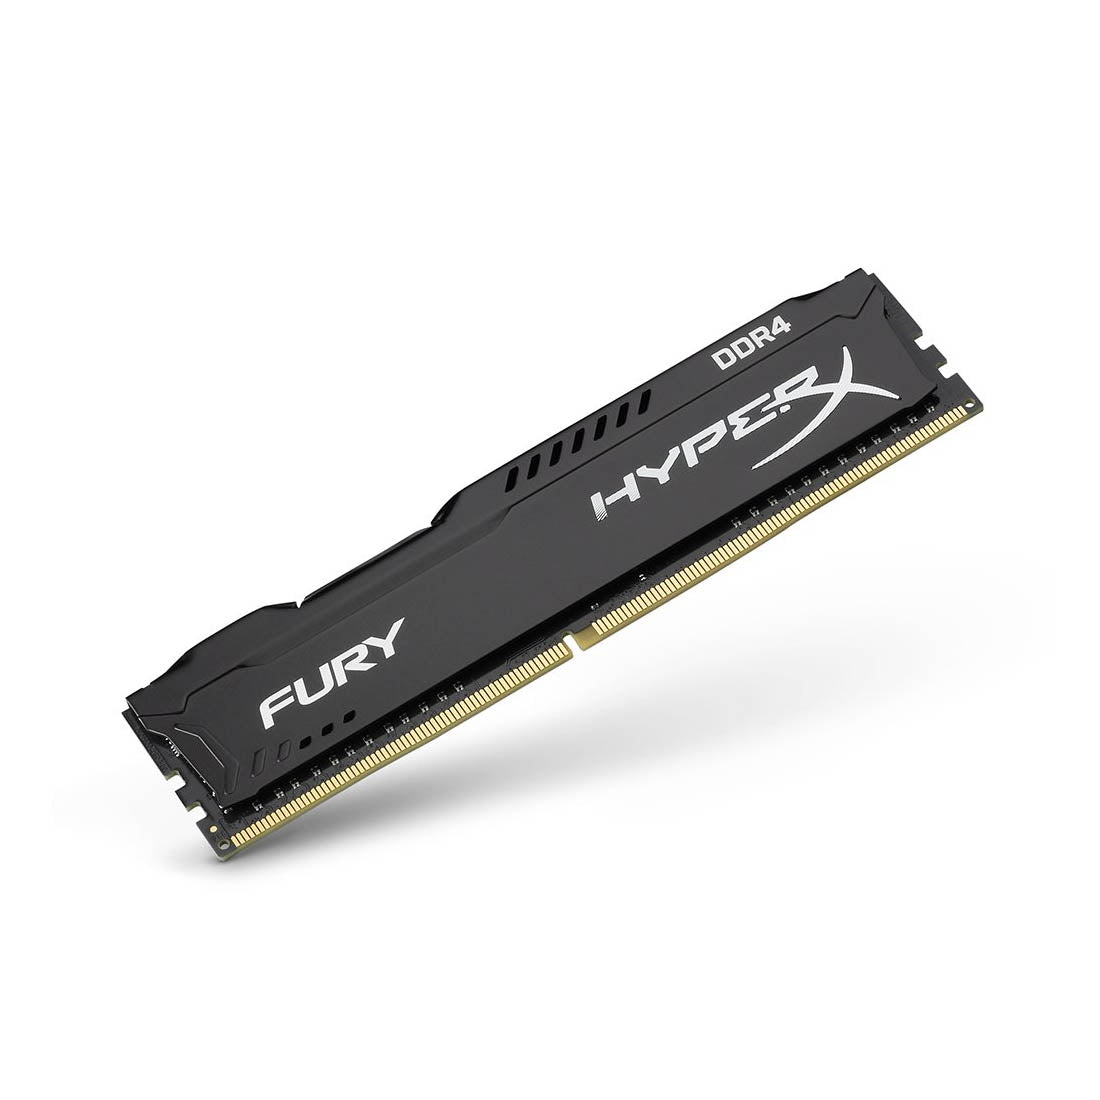 [RePacked] HyperX Fury 4GB DDR4 RAM 2666MHz CL16 Gaming Desktop Memory